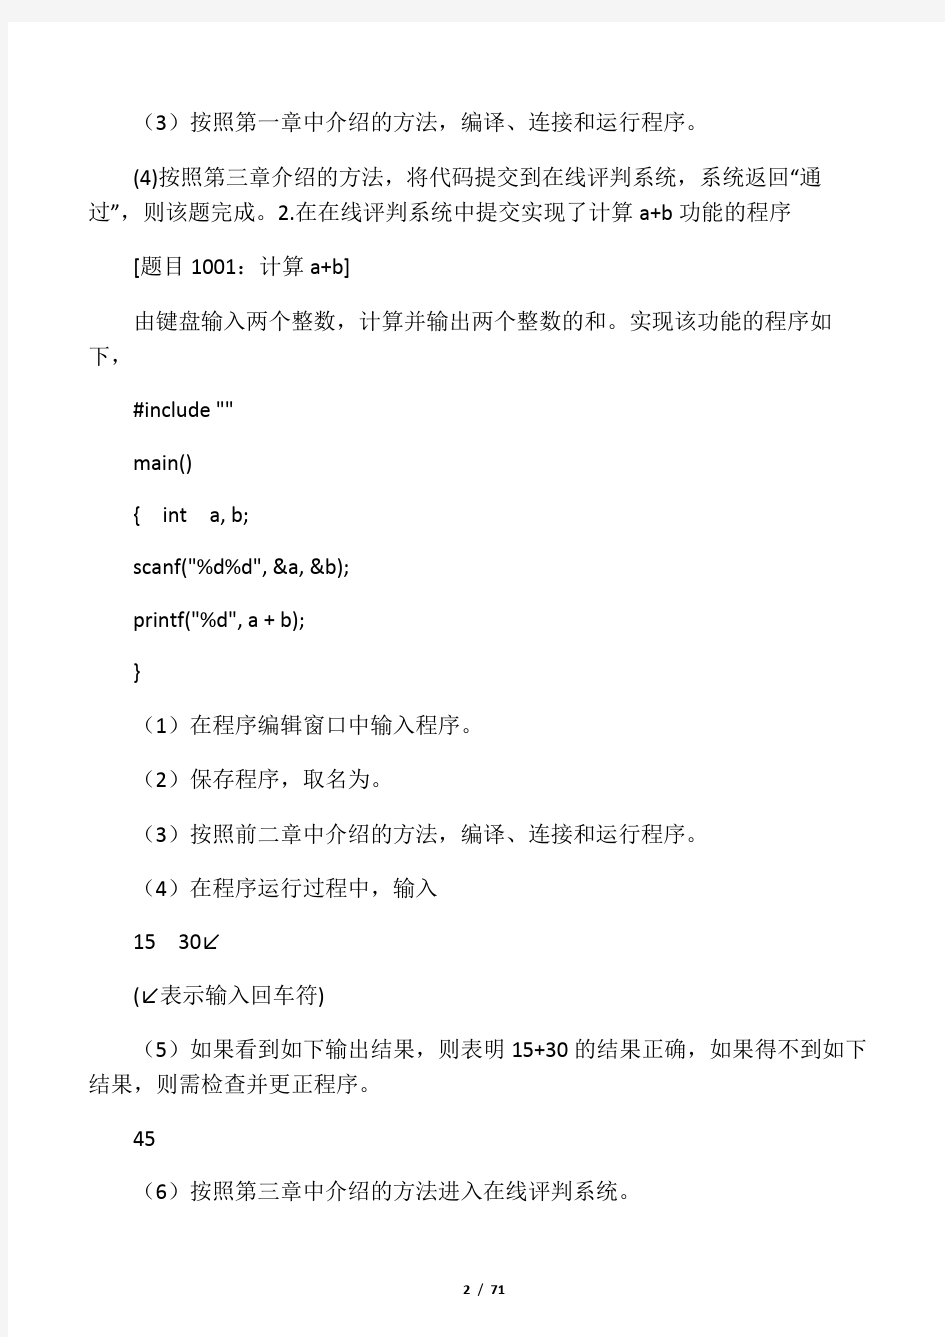 华南农业大学C语言实验上机实验第四